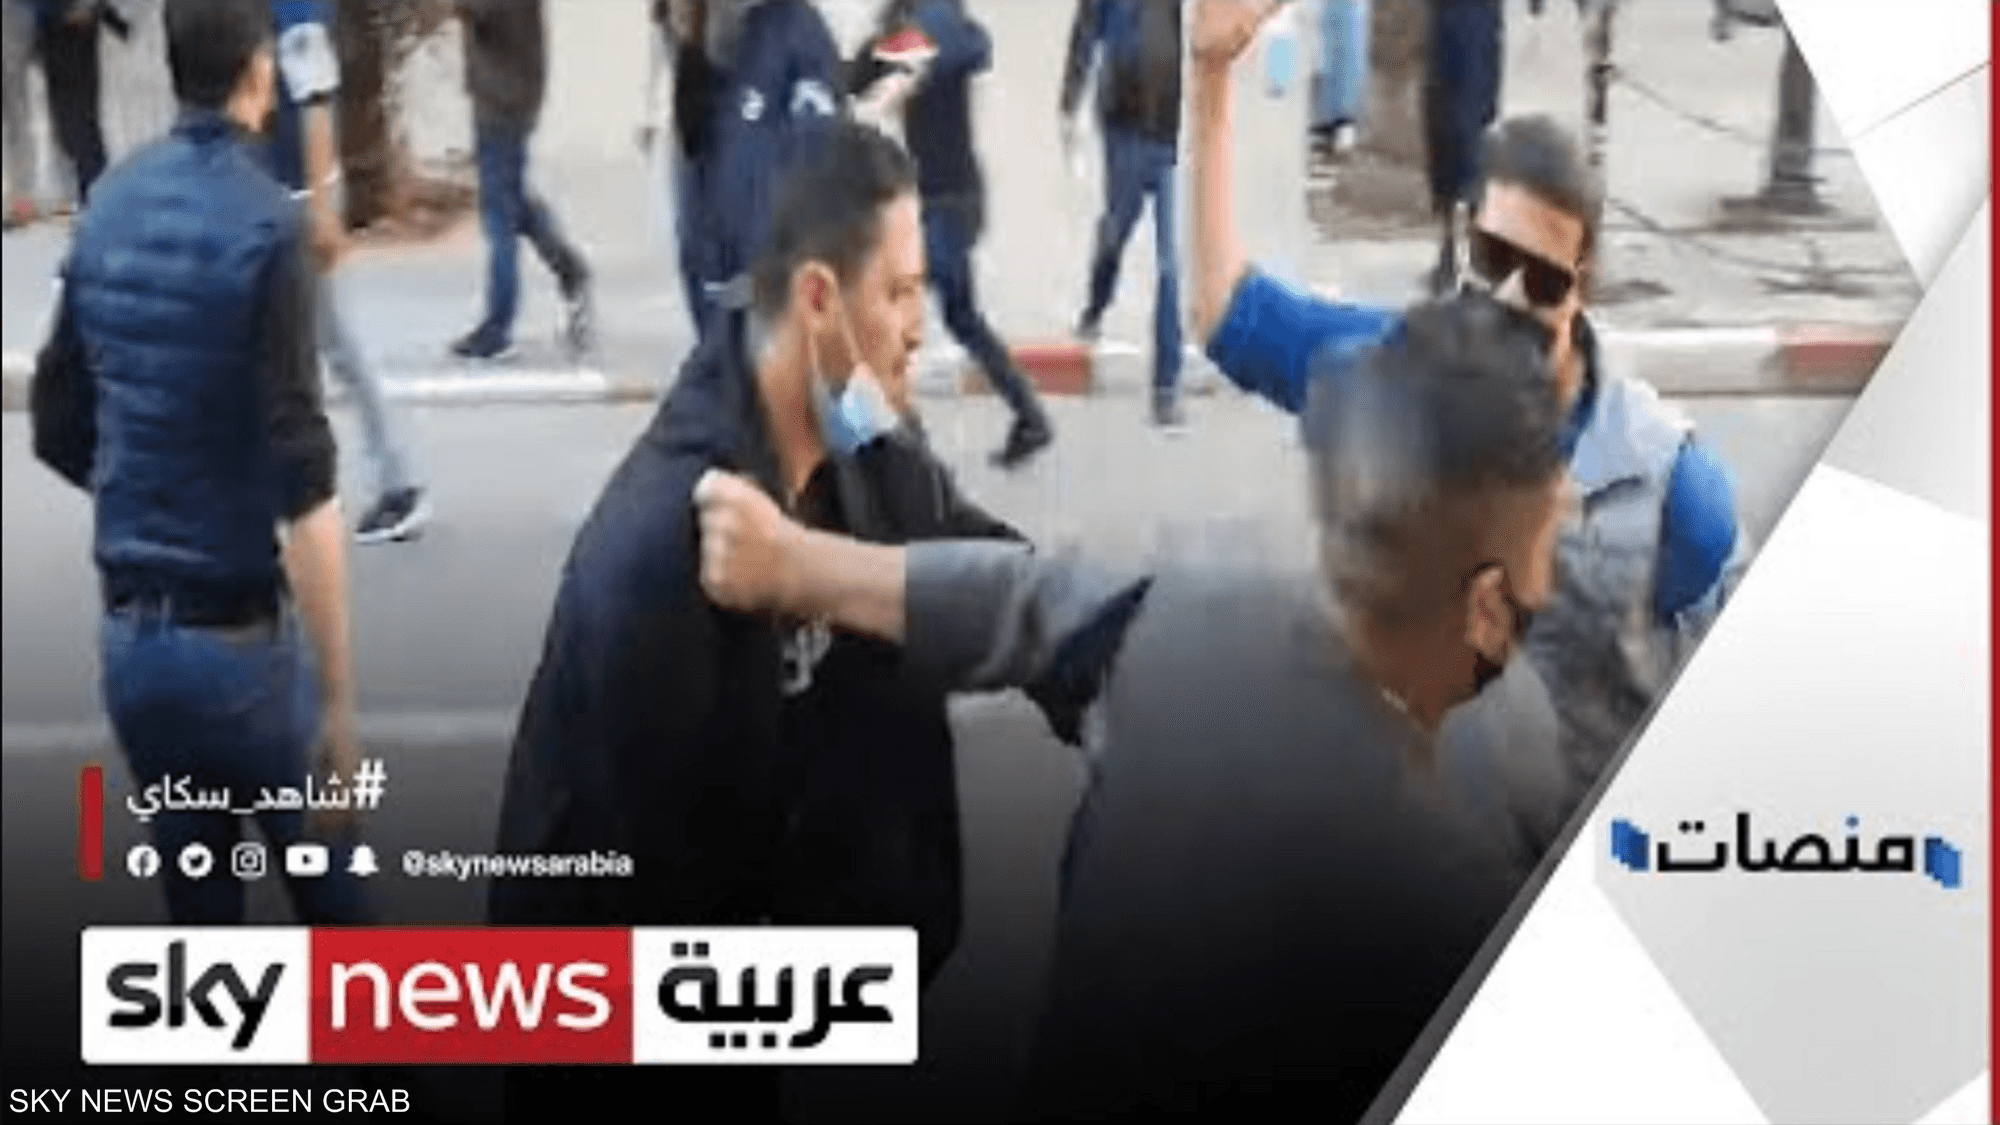 ضرب مسن في التظاهرات يشعل غضباً في الجزائر​